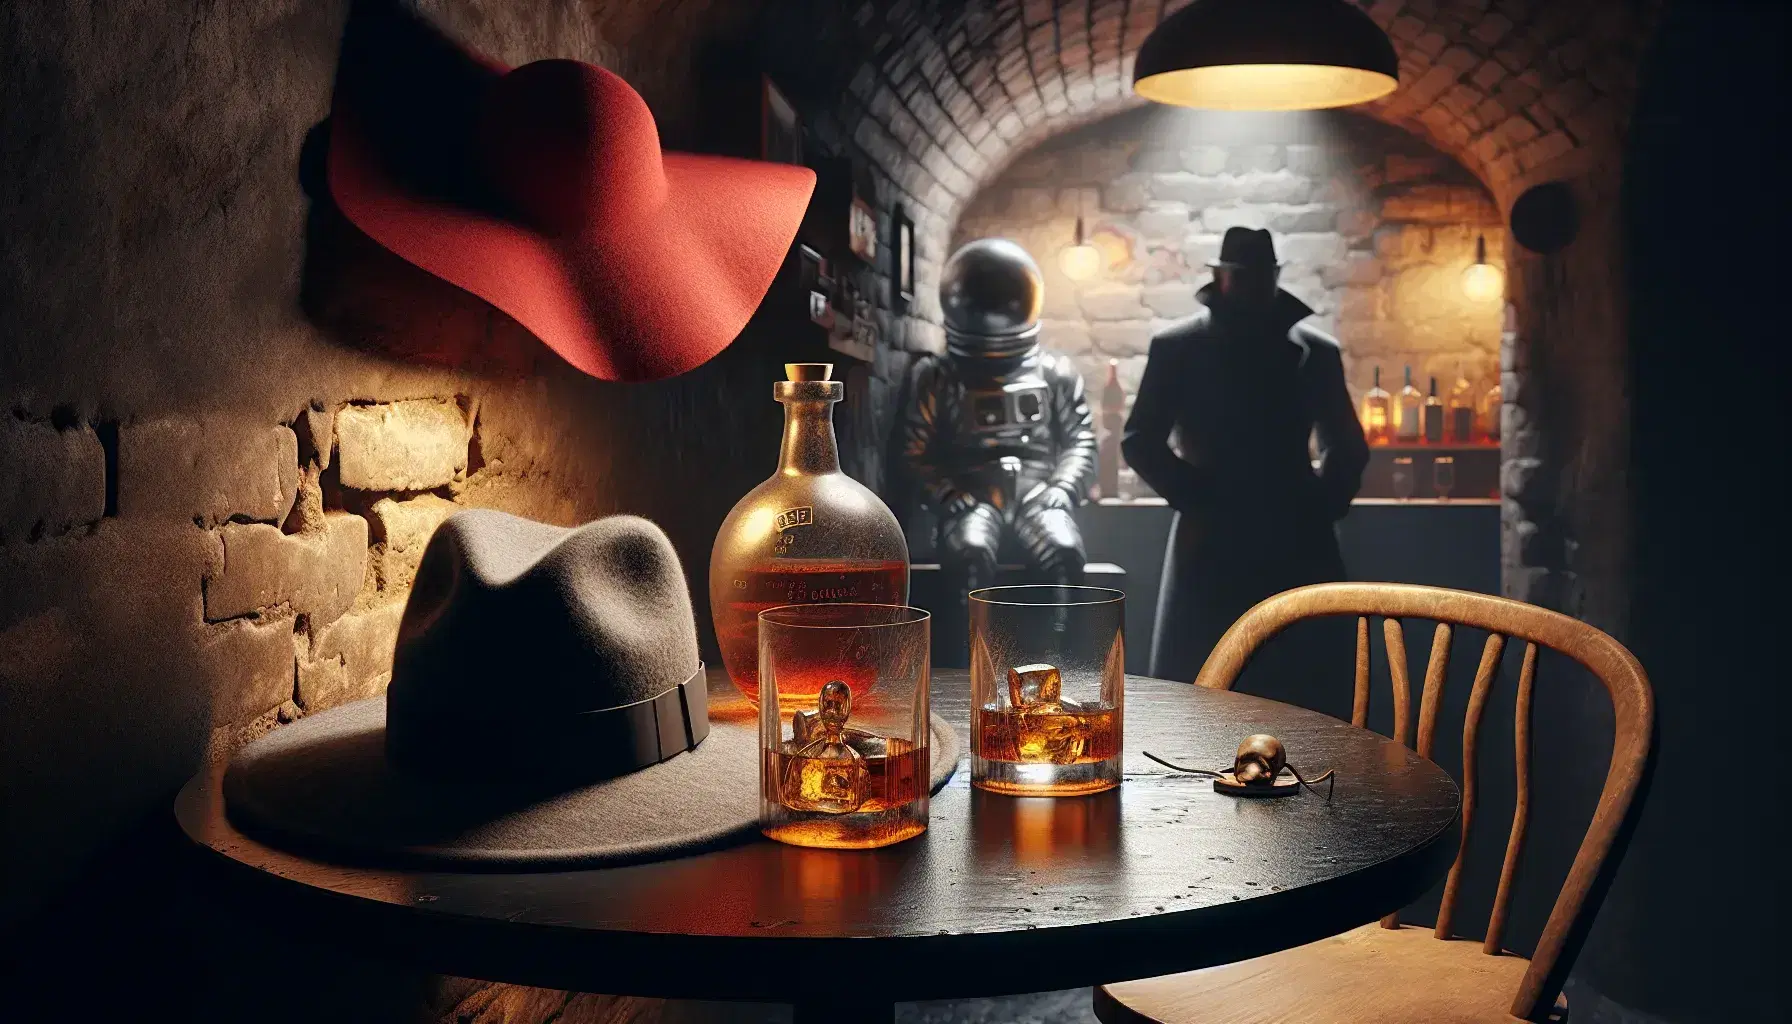 Interno accogliente di un bar sotterraneo con tavolo rotondo, bicchieri di whisky, cappelli da uomo e donna, e figura misteriosa in angolo buio.